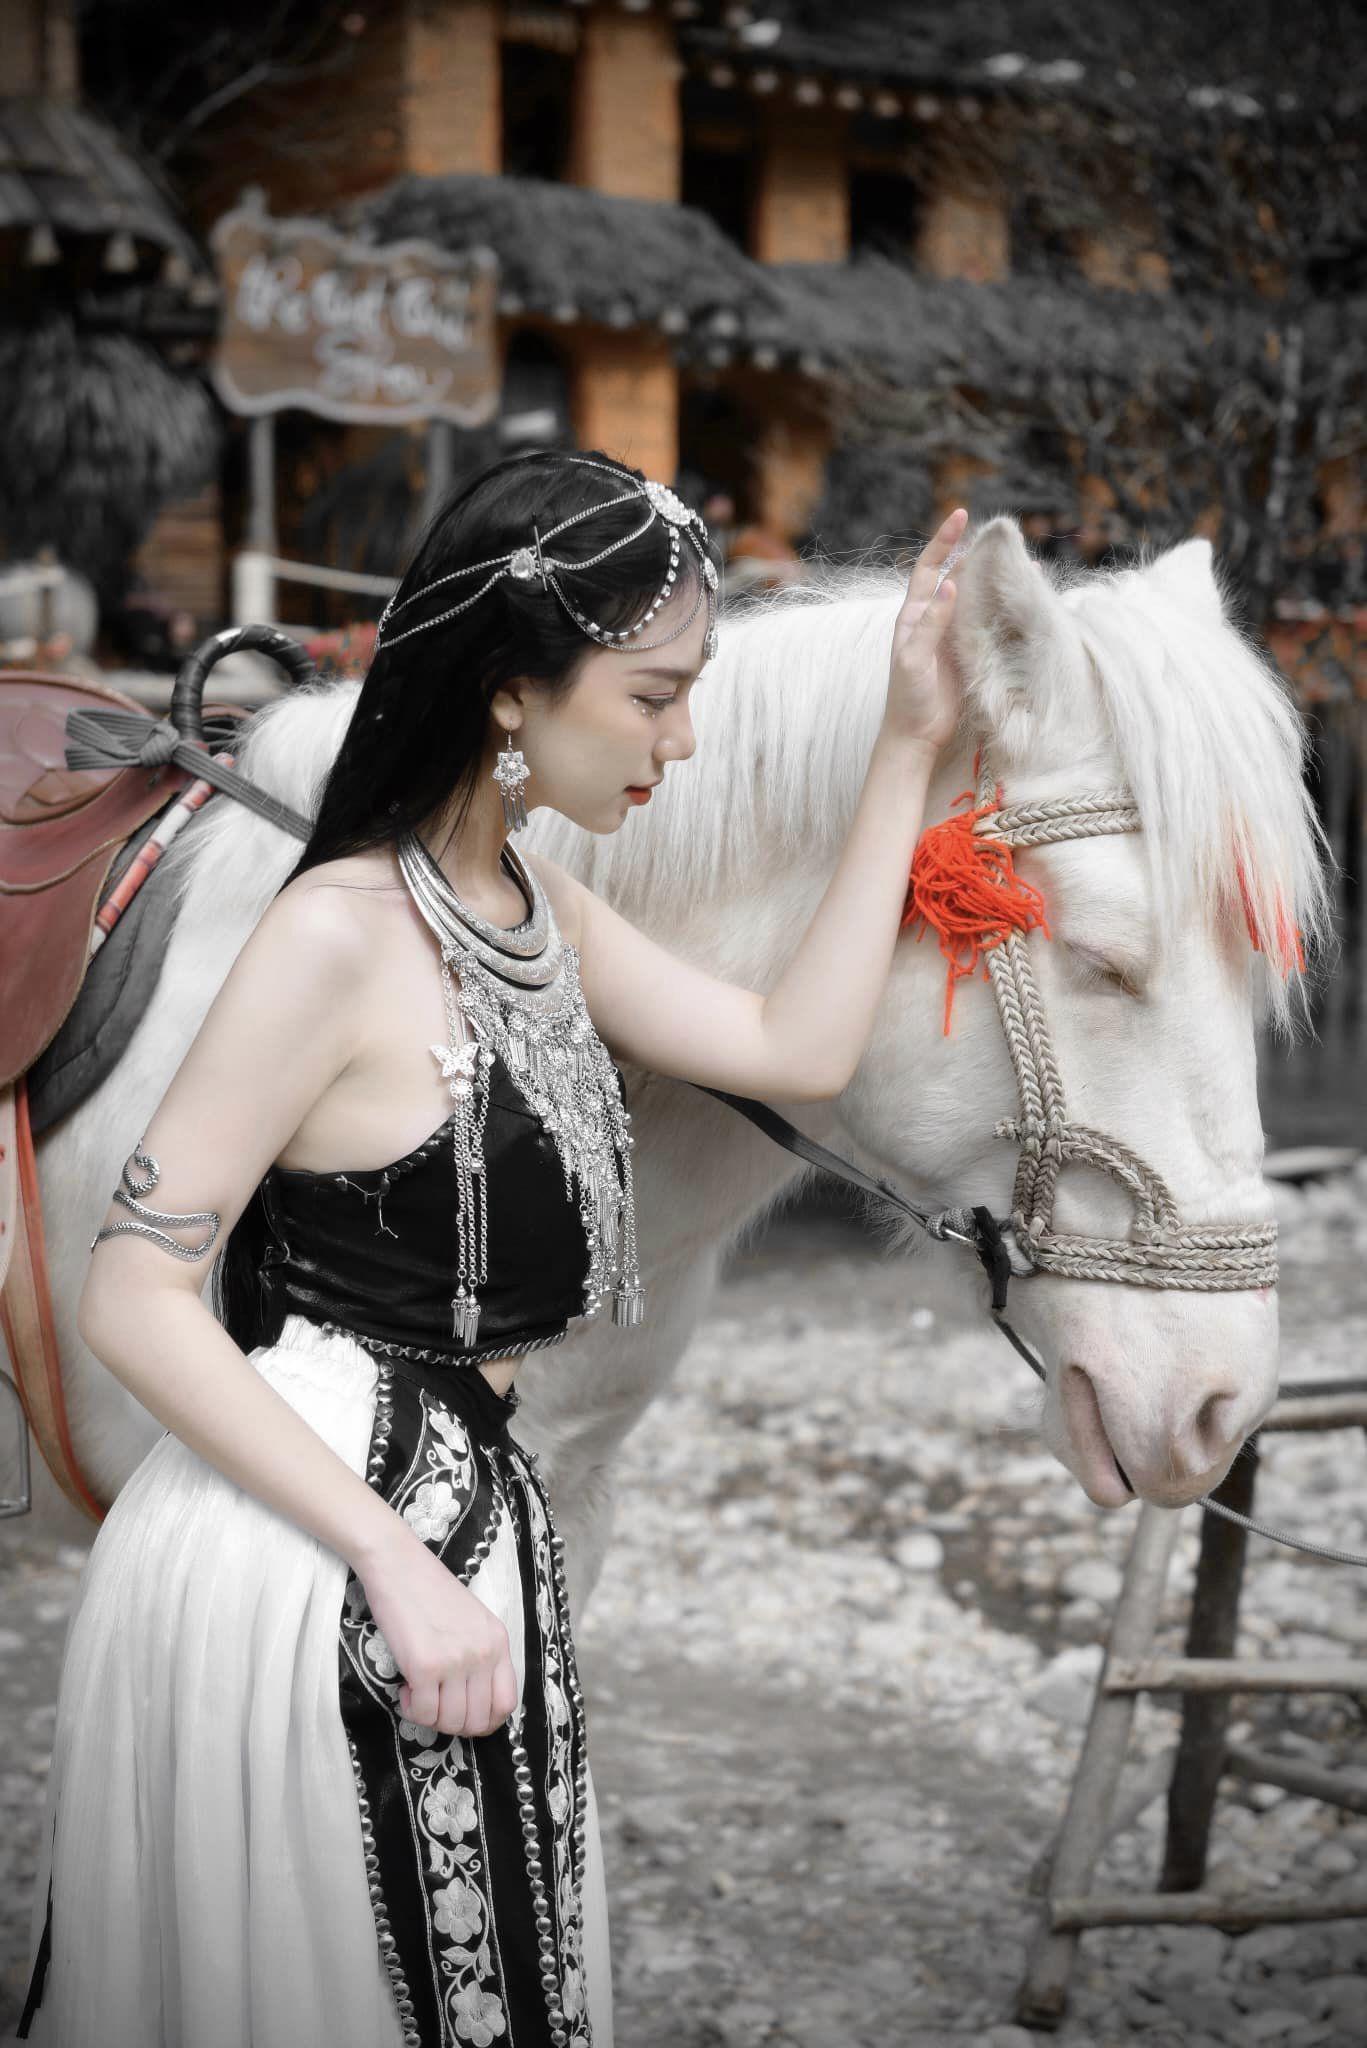 Cưỡi ngựa, bắn cung, nữ diễn viên 20 tuổi diện áo yếm khoe da trắng phát sáng, dáng nuột nà - 1